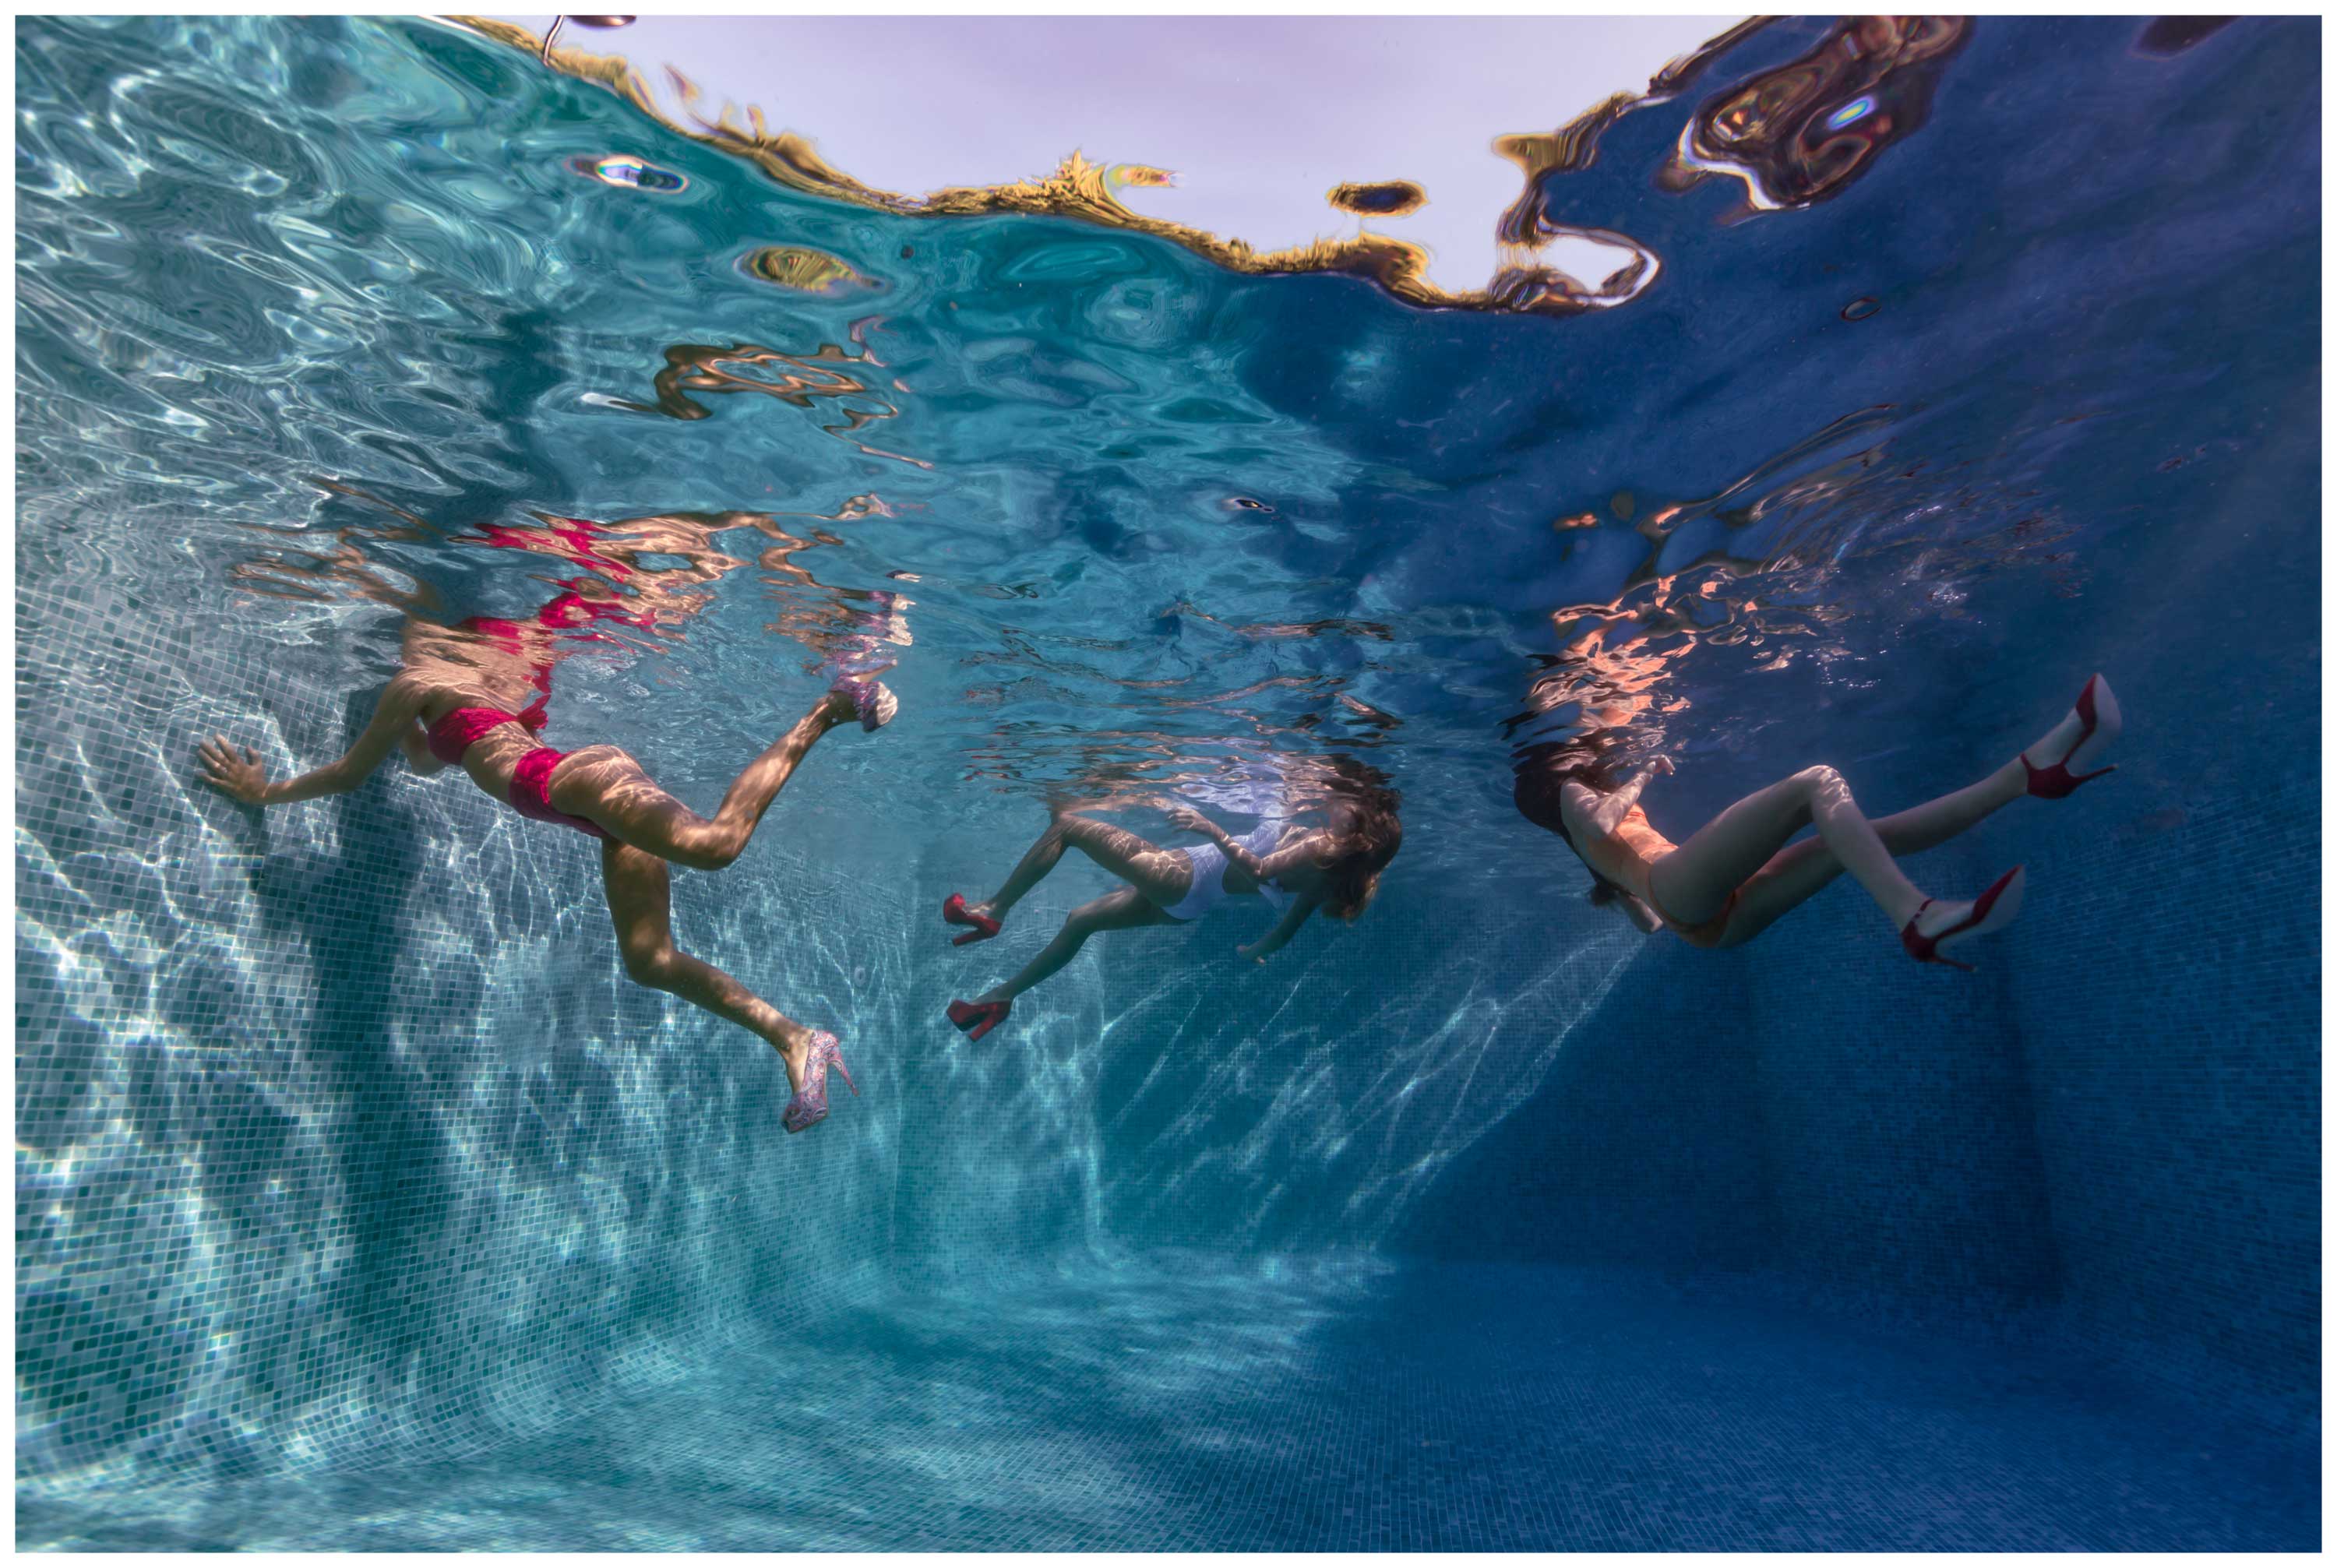 Sister Legs - Underwater Fashion Photography by Maya Almeida